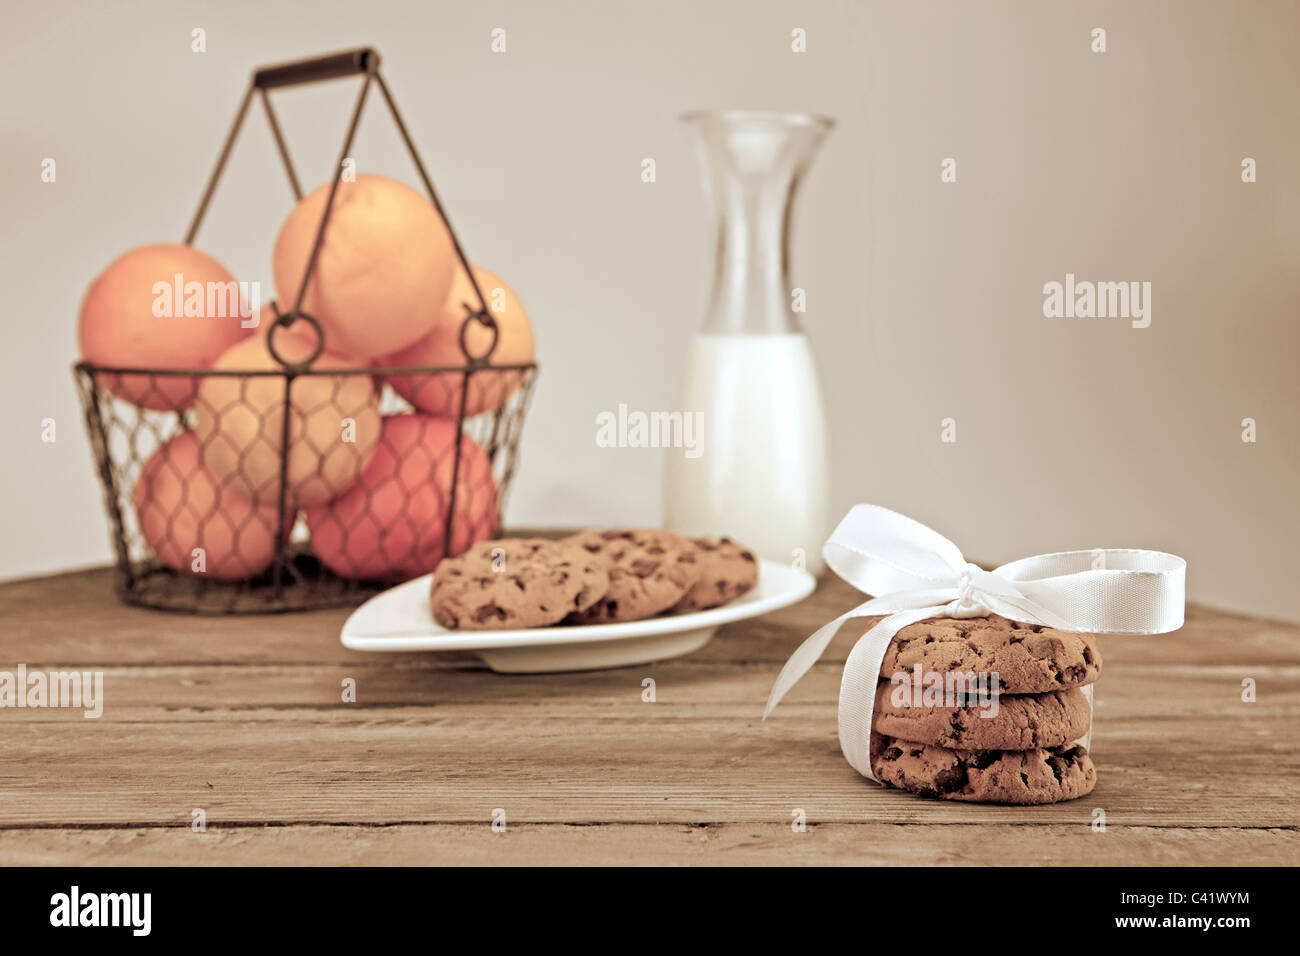 Table décorée pour une collation avec des fruits, du lait et des cookies Banque D'Images